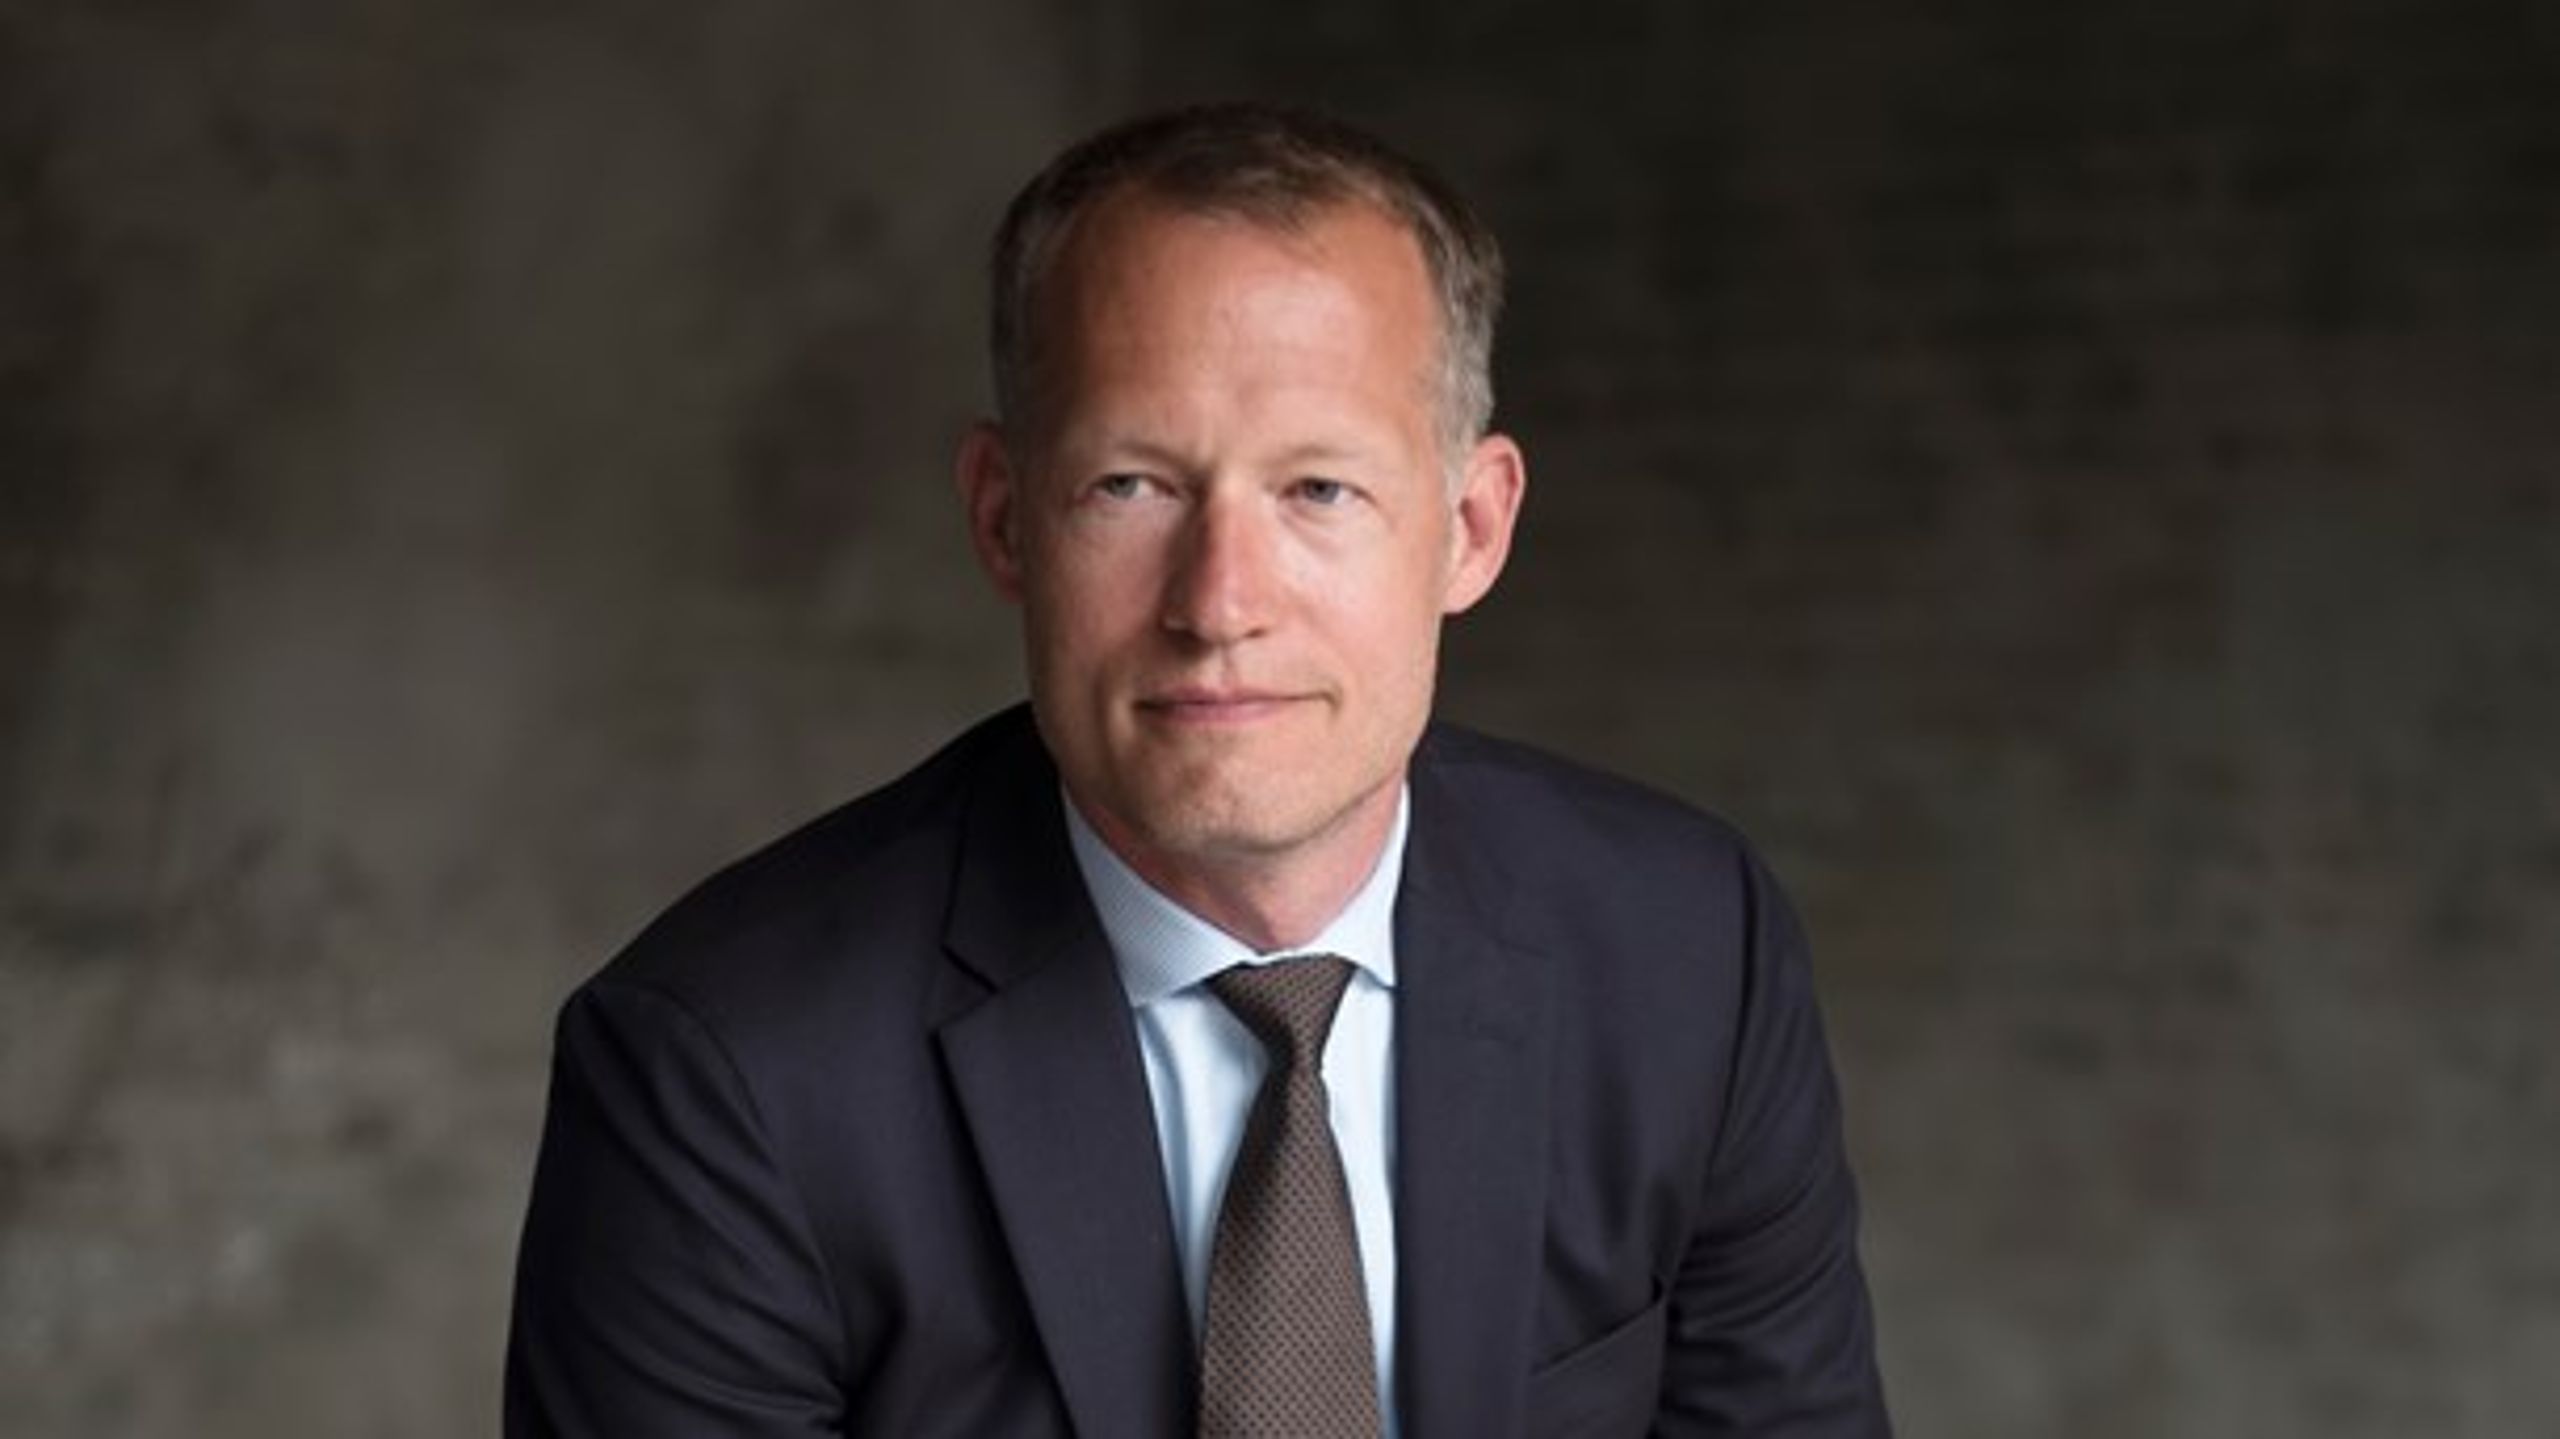 Morten Bæk blev departementschef i nu Klima-, Energi- og Forsyningsministeriet i maj 2018, hvor han kom fra en stilling som direktør&nbsp;for Energistyrelsen.